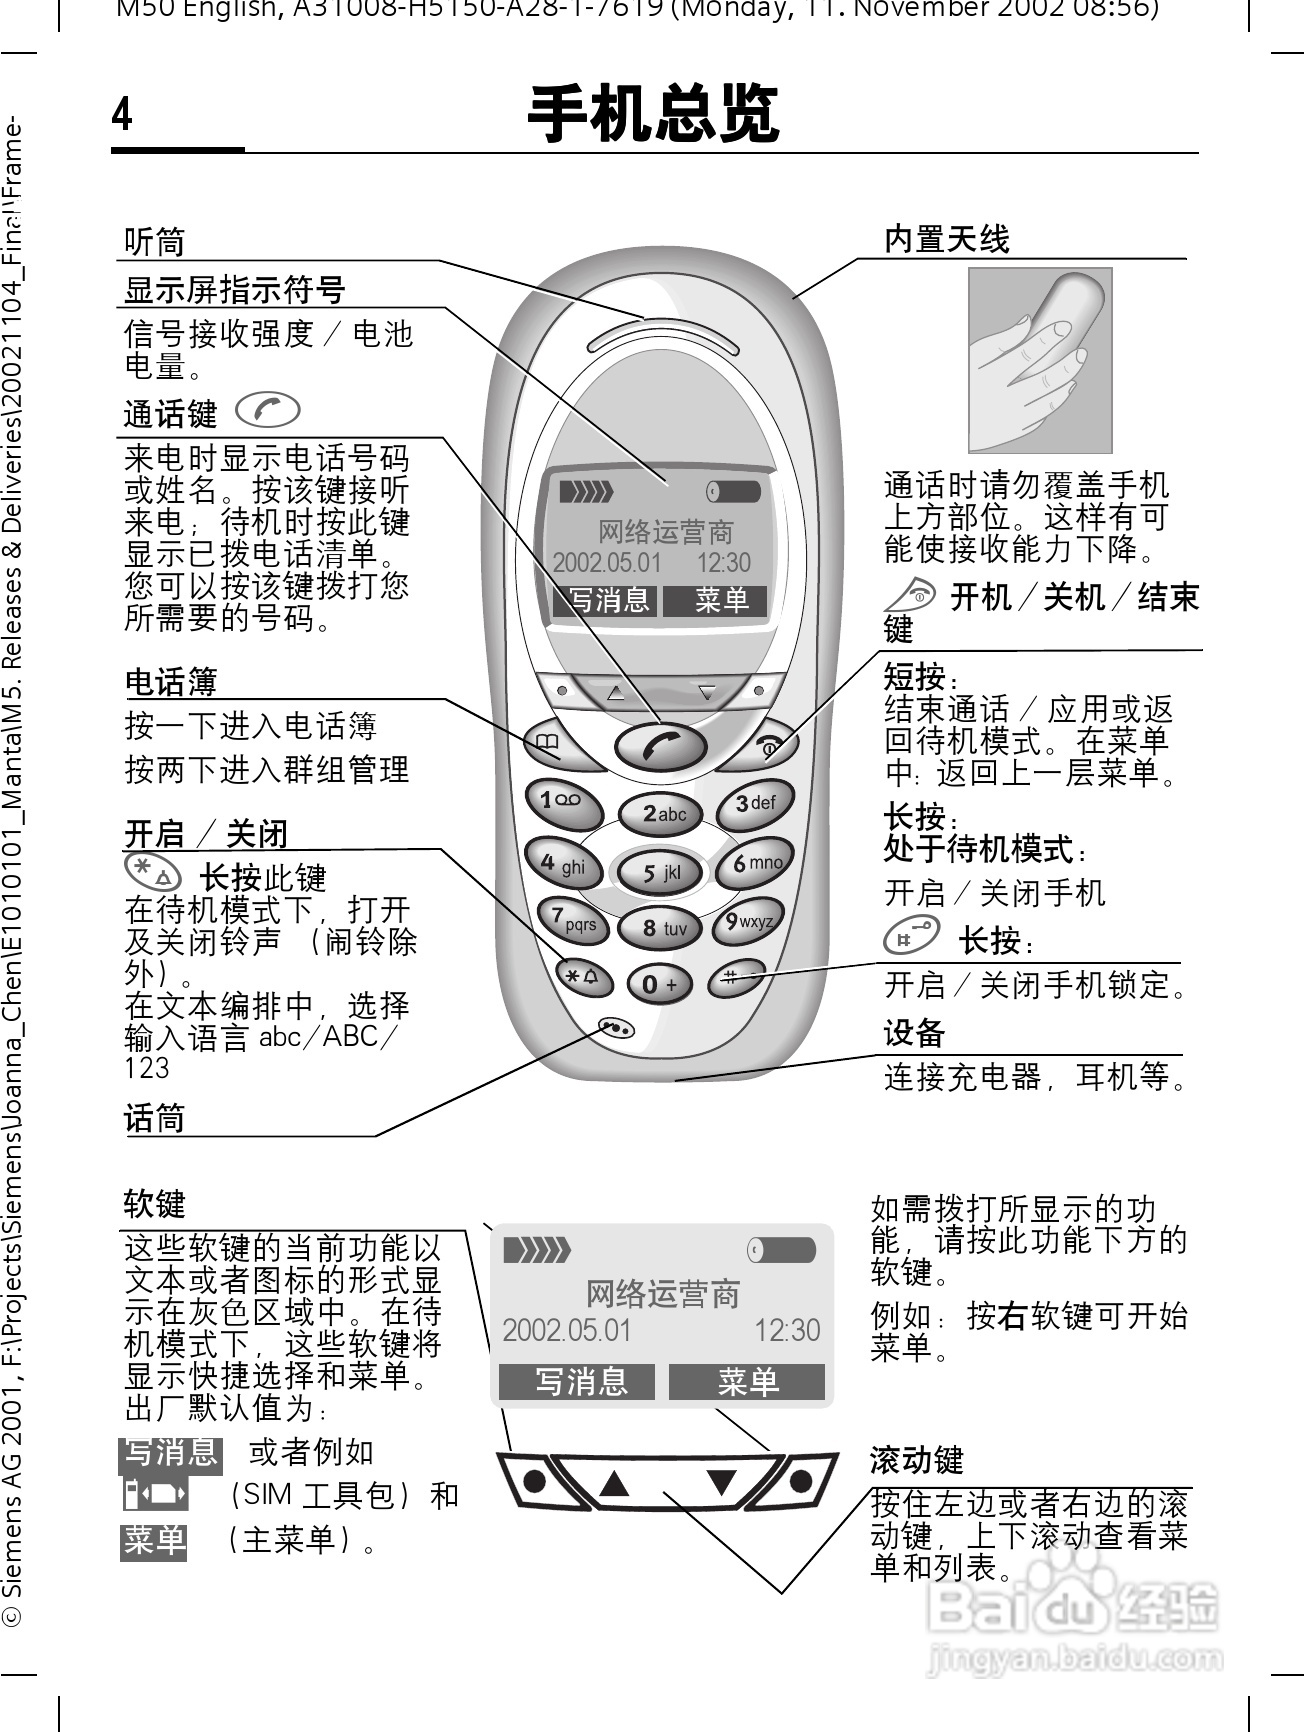 西门子3118手机使用说明书:[1]